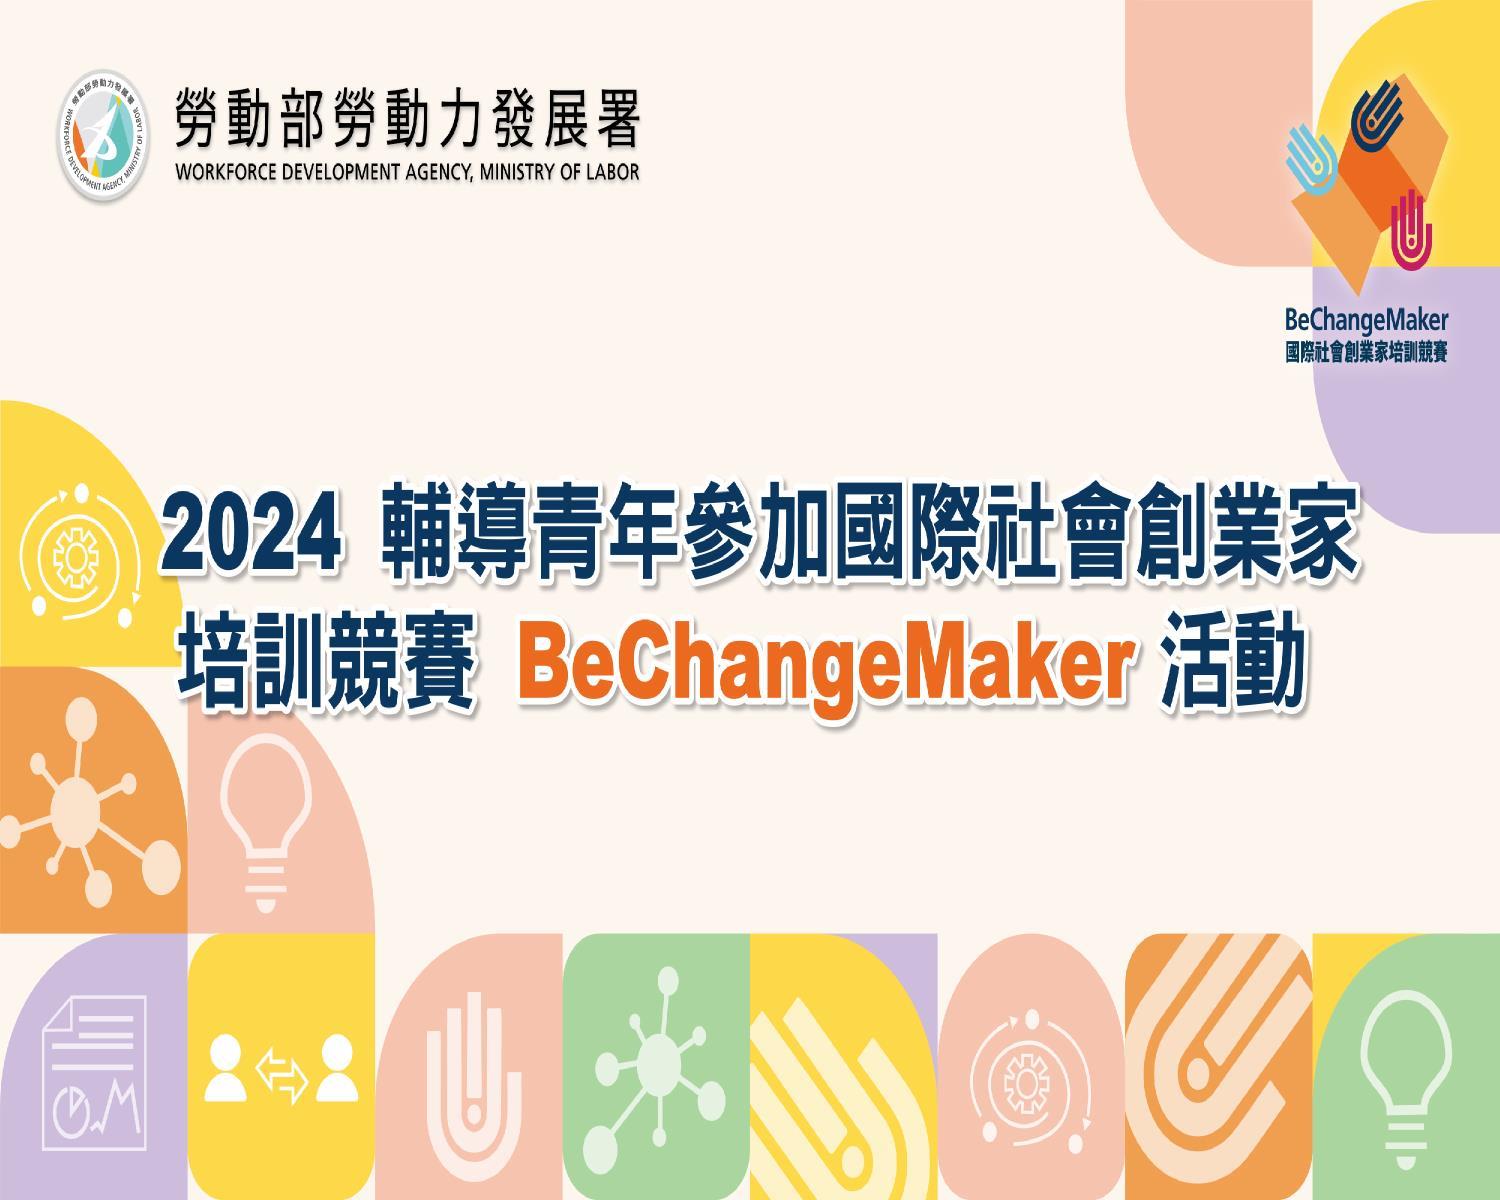 2024 輔導青年參加國際社會創業家培訓競賽 (BeChangeMaker,BCM)活動